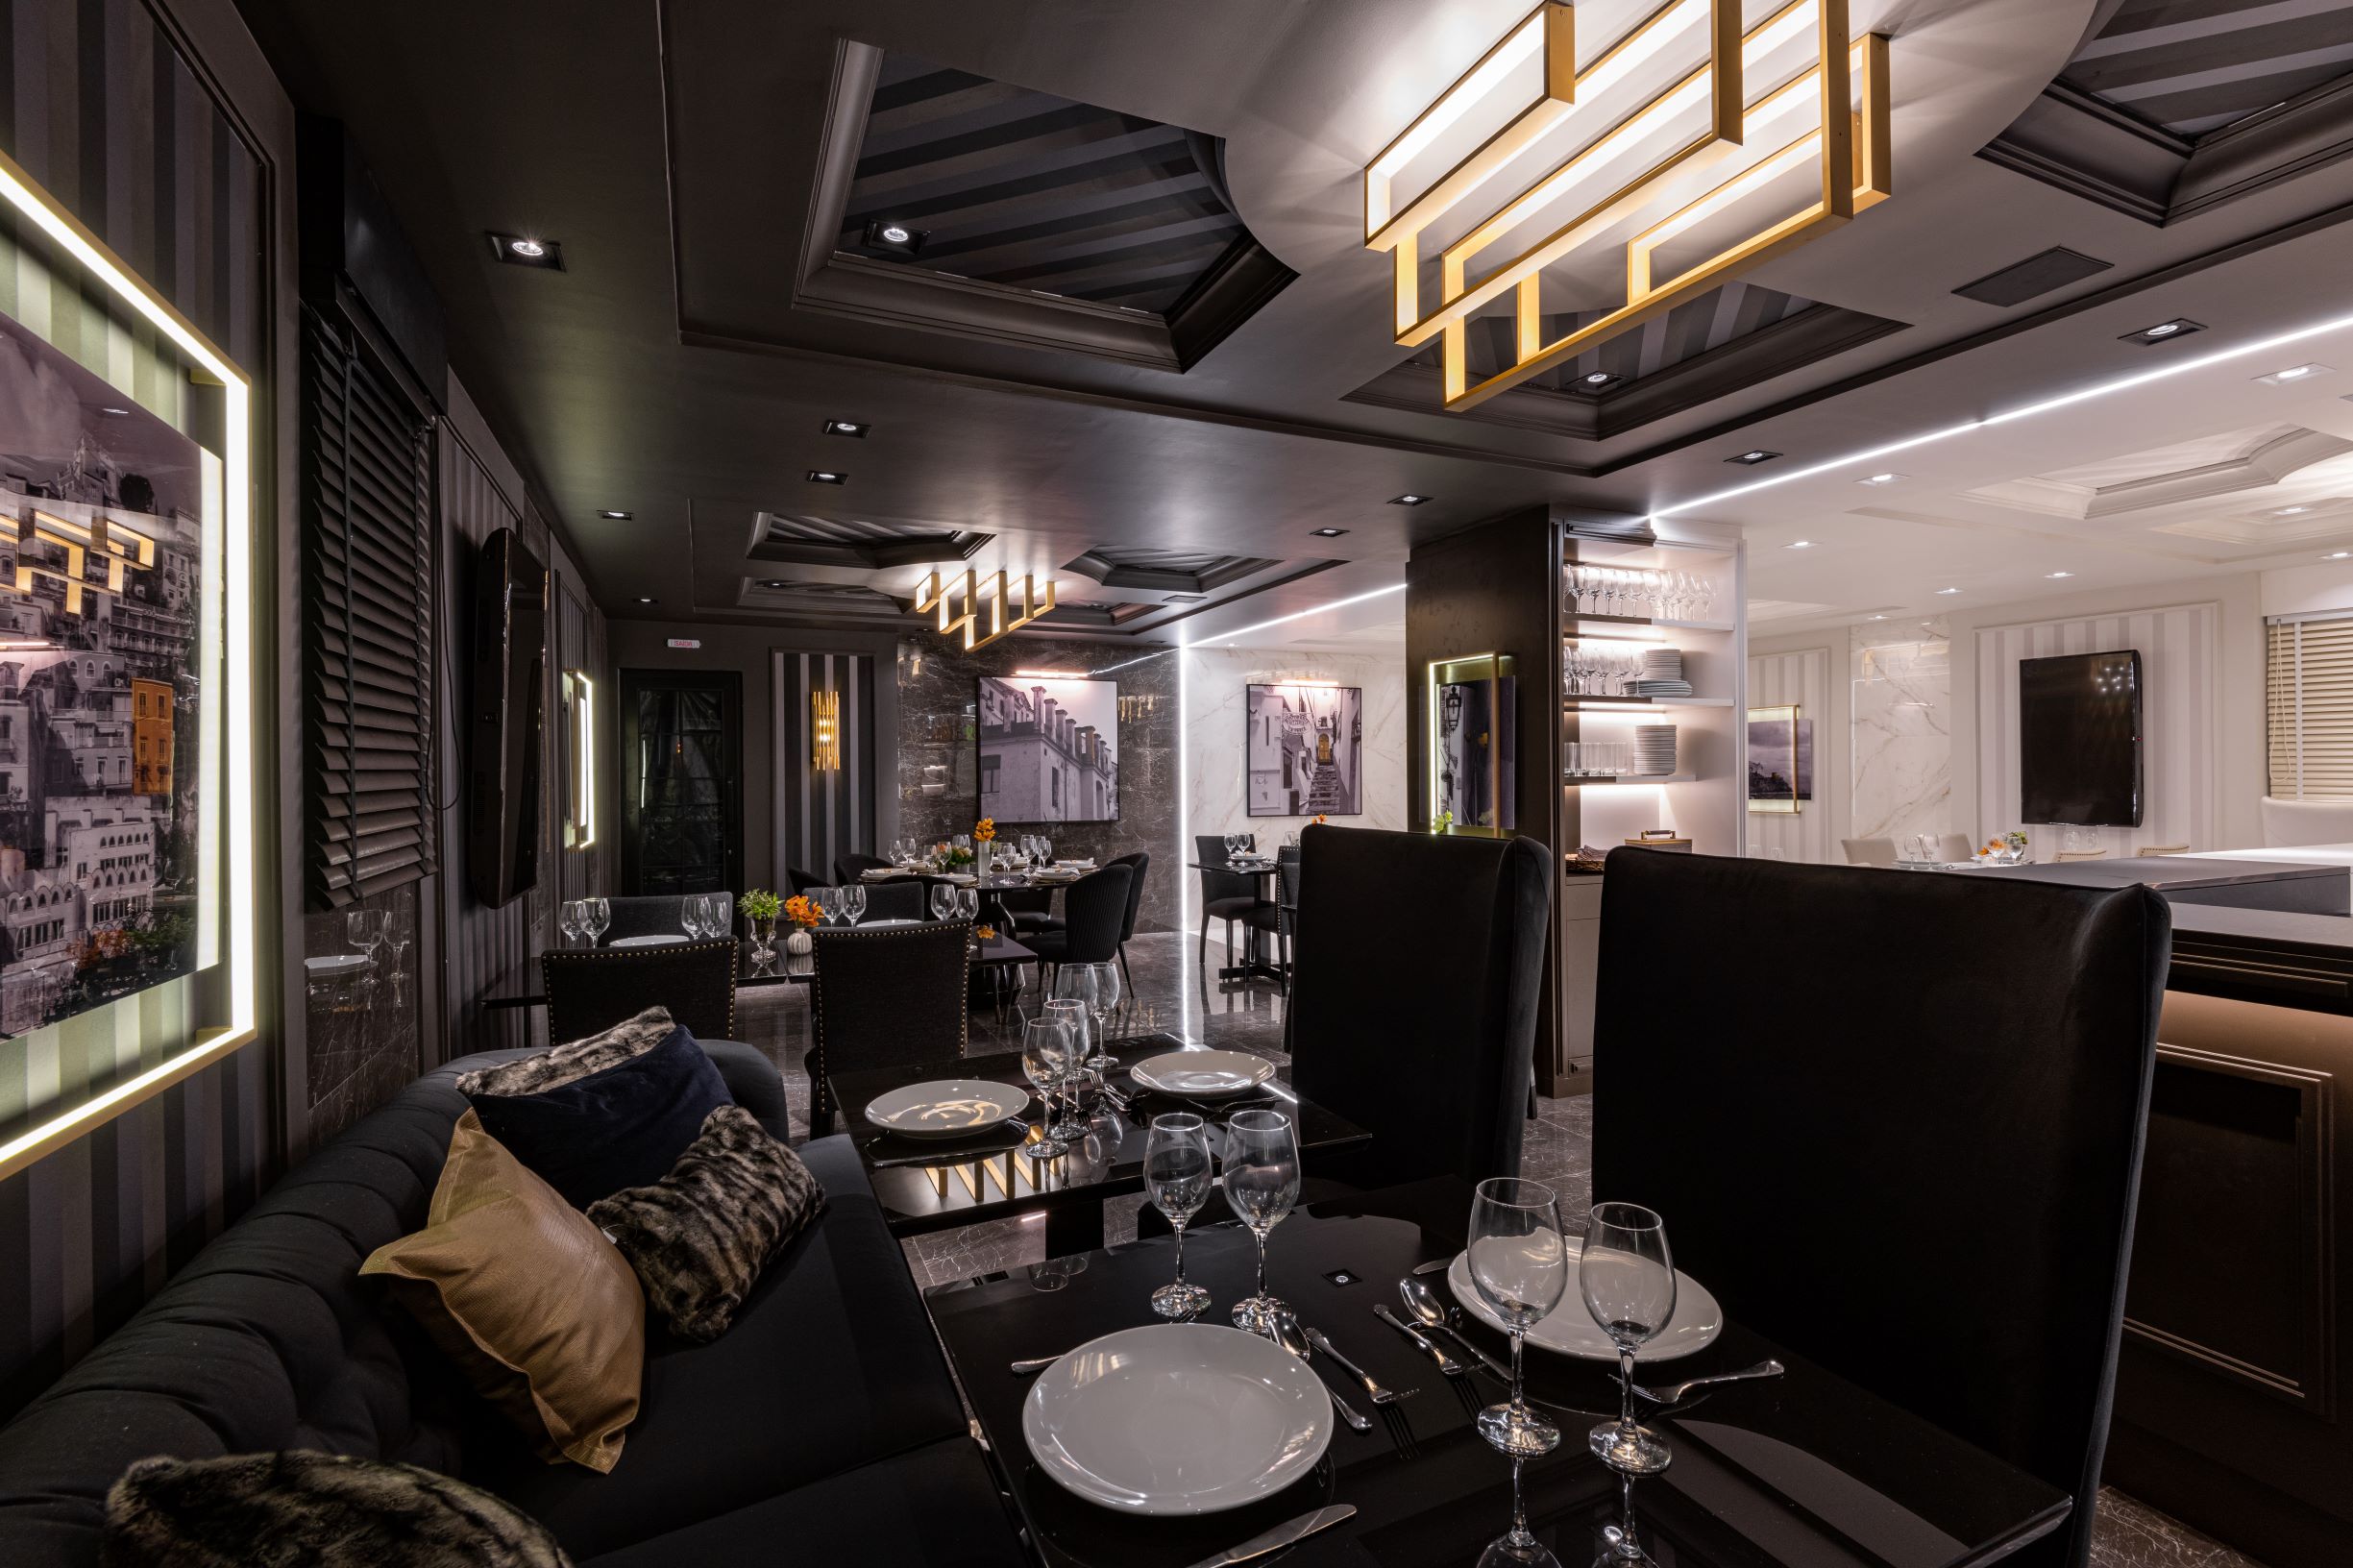 Restaurante Limone, CASACOR São Paulo 2019, Habitat Projetos Inteligentes. restaurante com conceito de dualidade. "lado noite", teto de gesso com relevo, cadeiras clássicas pretas, sofá preto clássico, mesa de mármore preto e utensílios. 